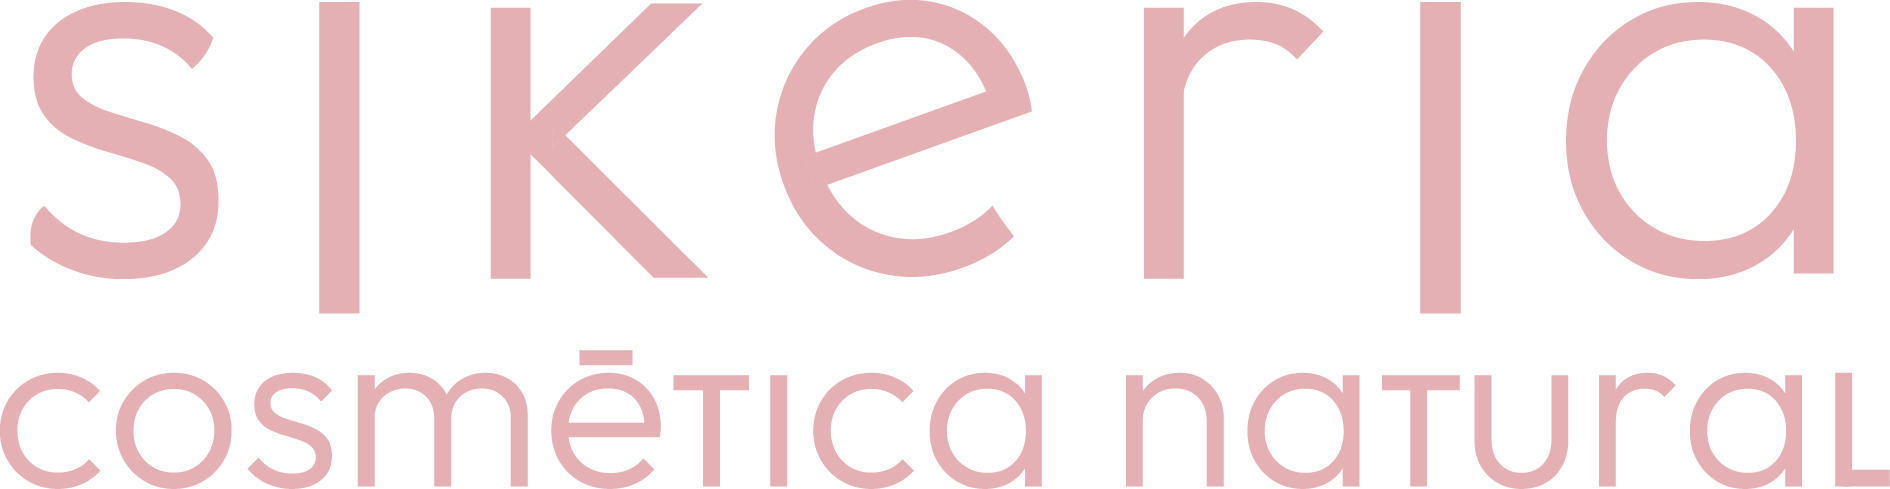 Logo marca de cosmética natural hecha en españa y curso de jabón